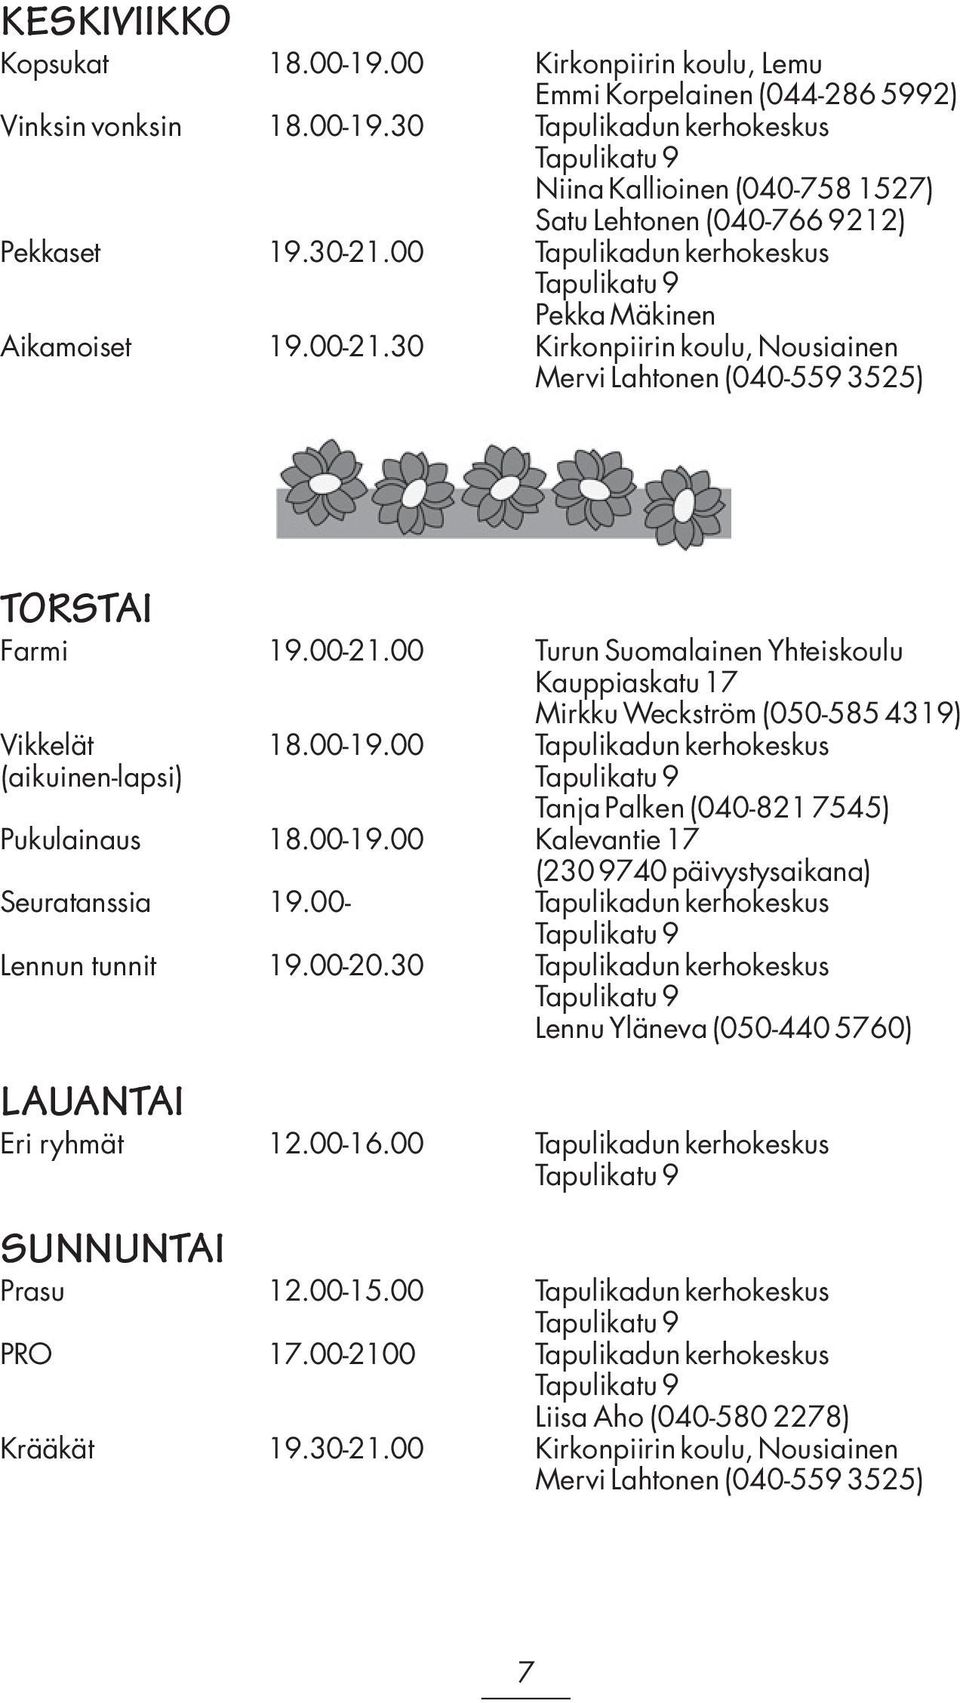 00-19.00 Tapulikadun kerhokeskus (aikuinen-lapsi) Tanja Palken (040-821 7545) Pukulainaus 18.00-19.00 Kalevantie 17 (230 9740 päivystysaikana) Seuratanssia 19.